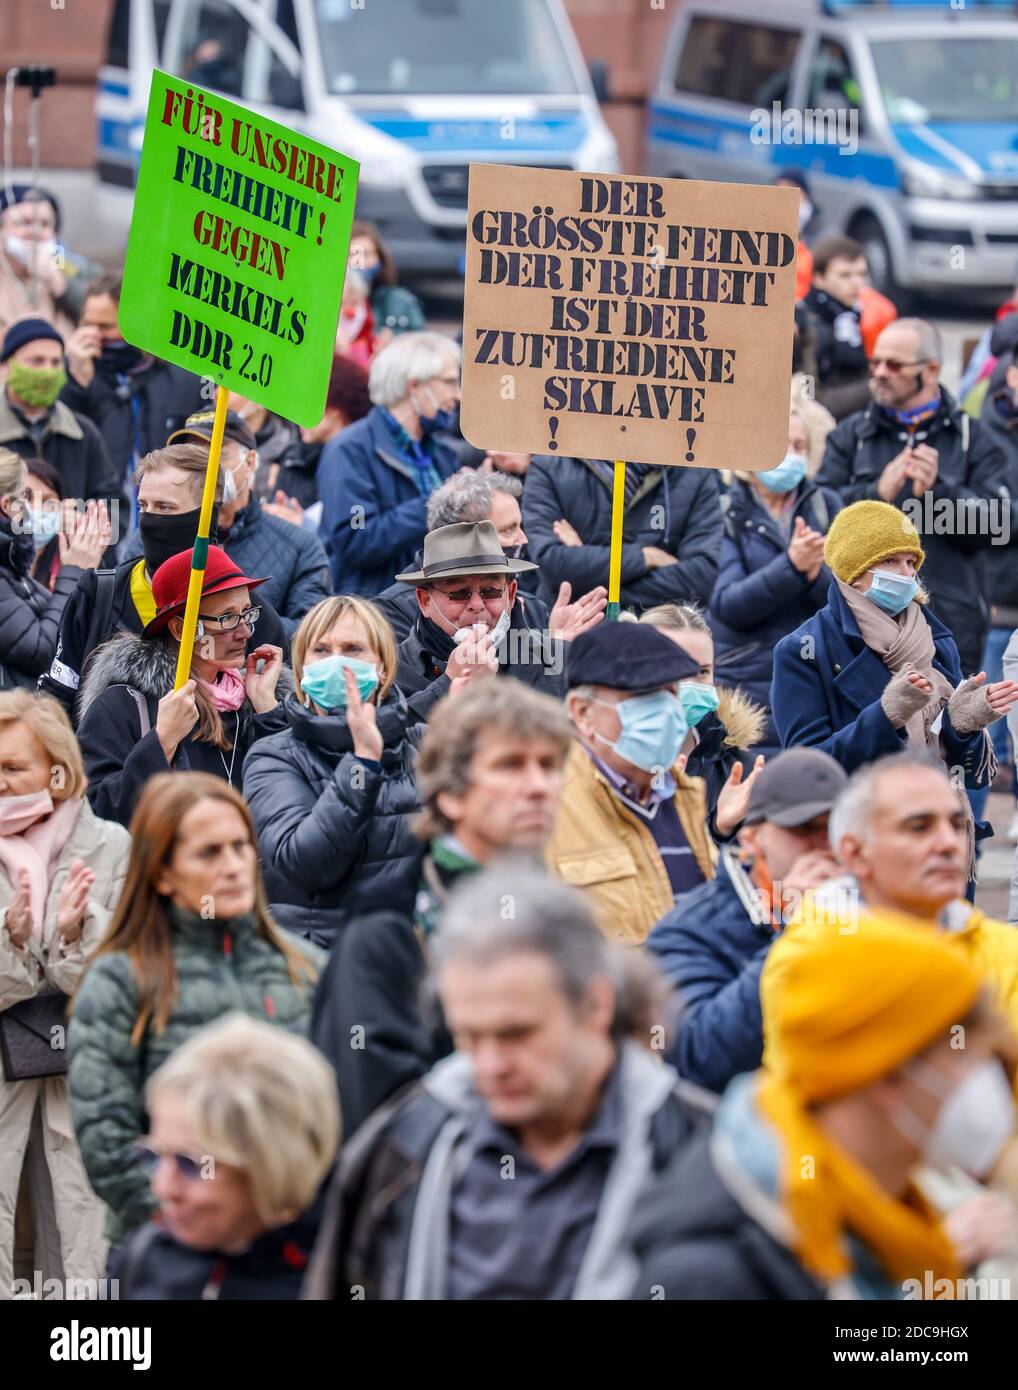 18.10.2020, Dortmund, Nordrhein-Westfalen, Deutschland - Antikorona-Demonstration am Friedensplatz, Demonstration gegen die Gesundheitspolitik der Fede Stockfoto